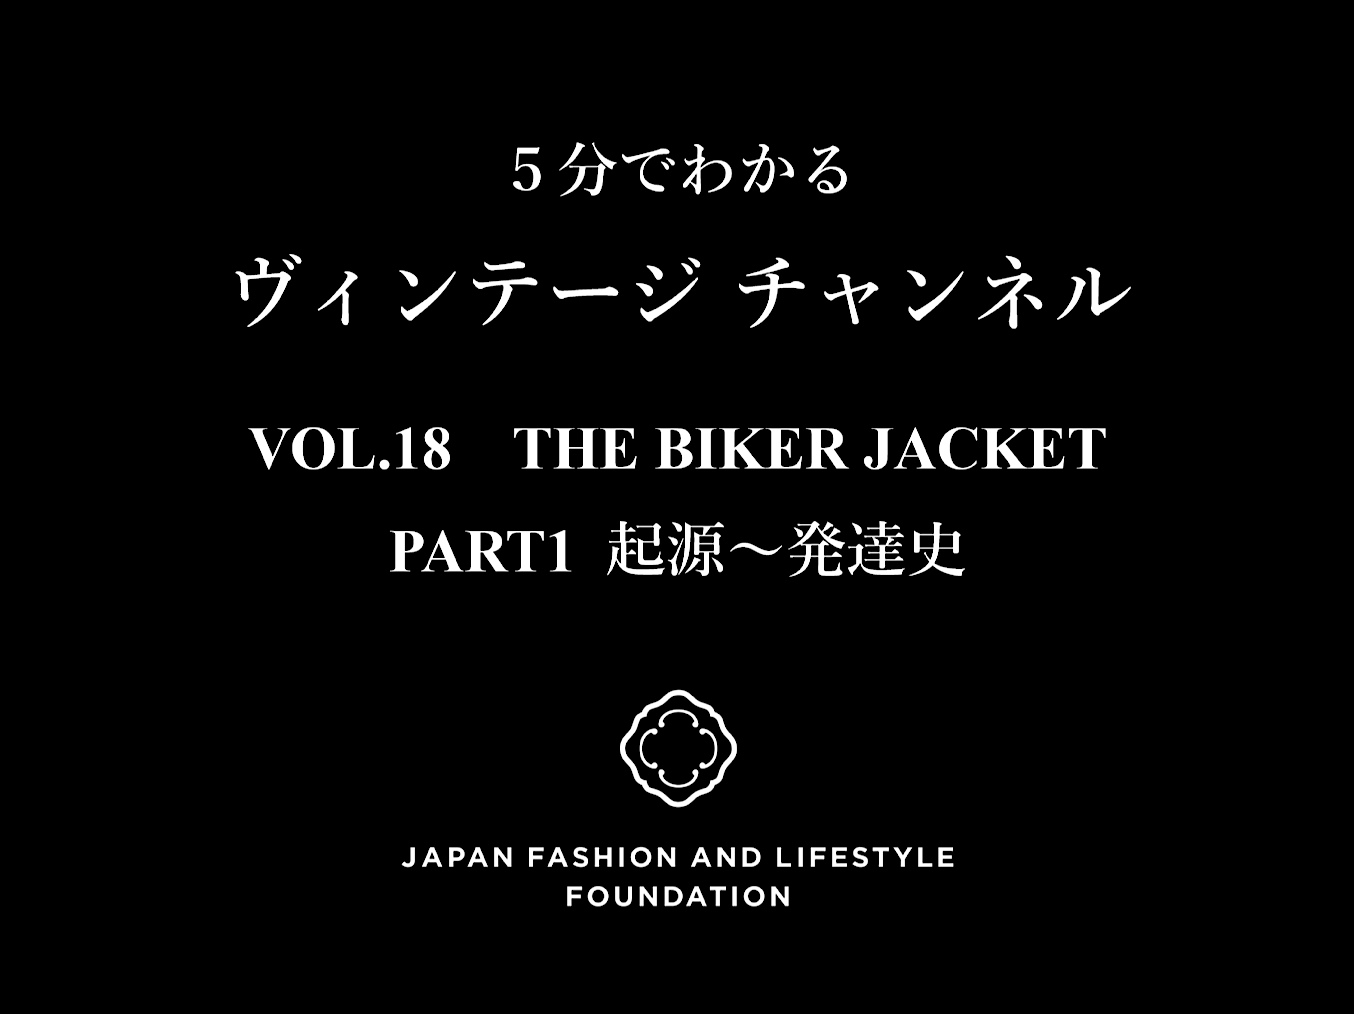 「5分でわかるヴィンテージチャンネル」VOL.18 ライダースジャケット  PART1 起源・発達史 発信